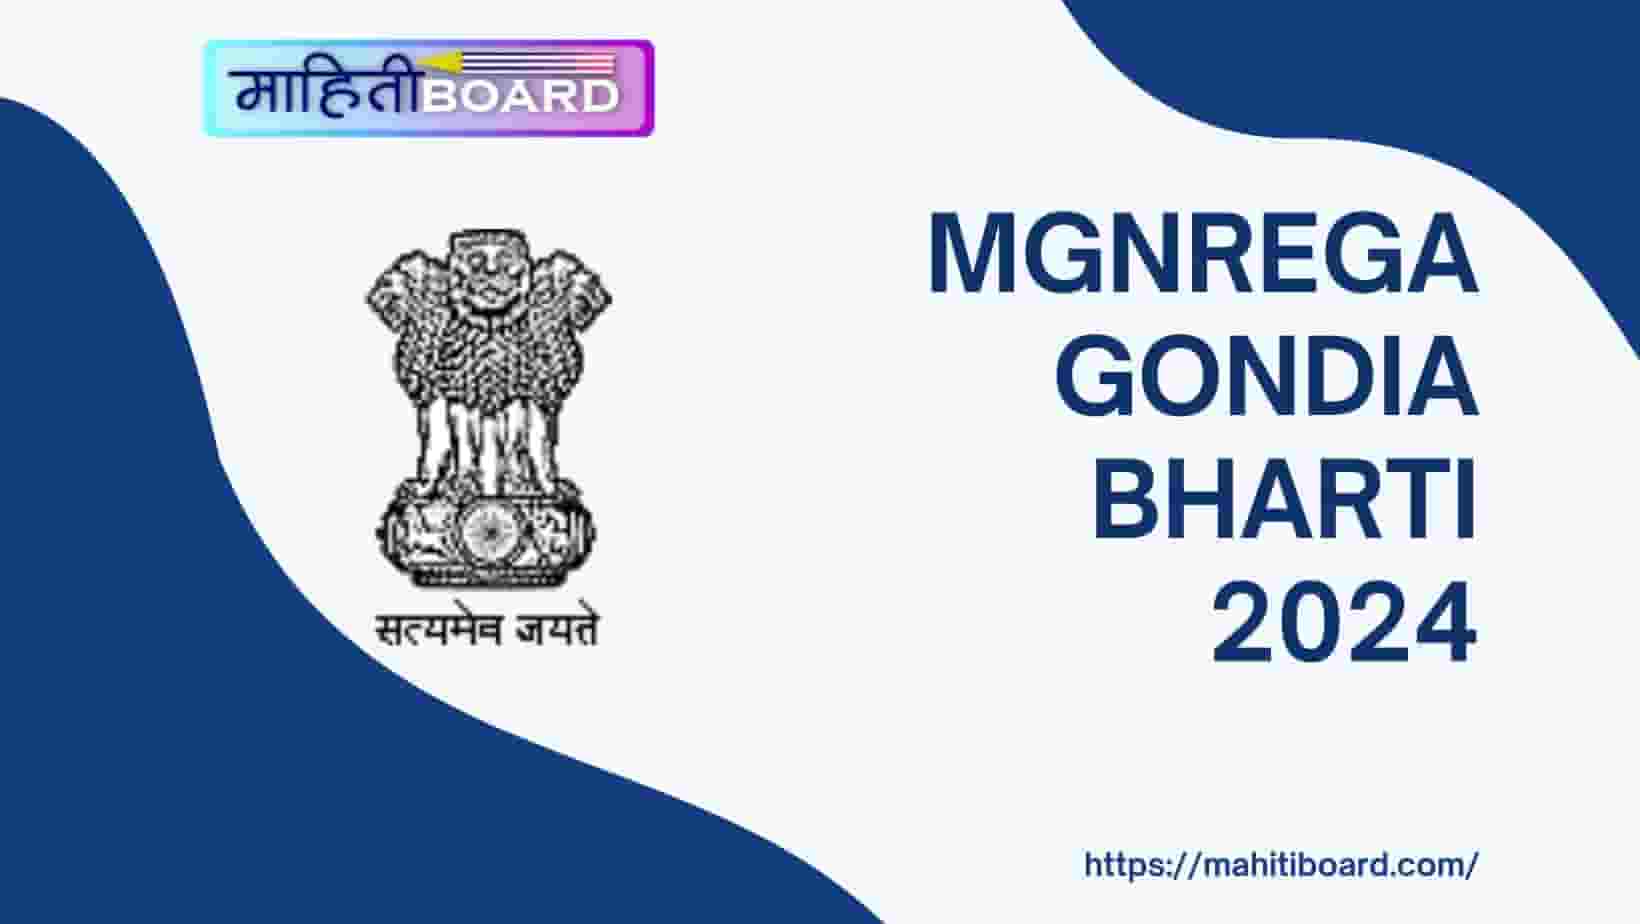 MGNREGA Gondia Bharti 2024